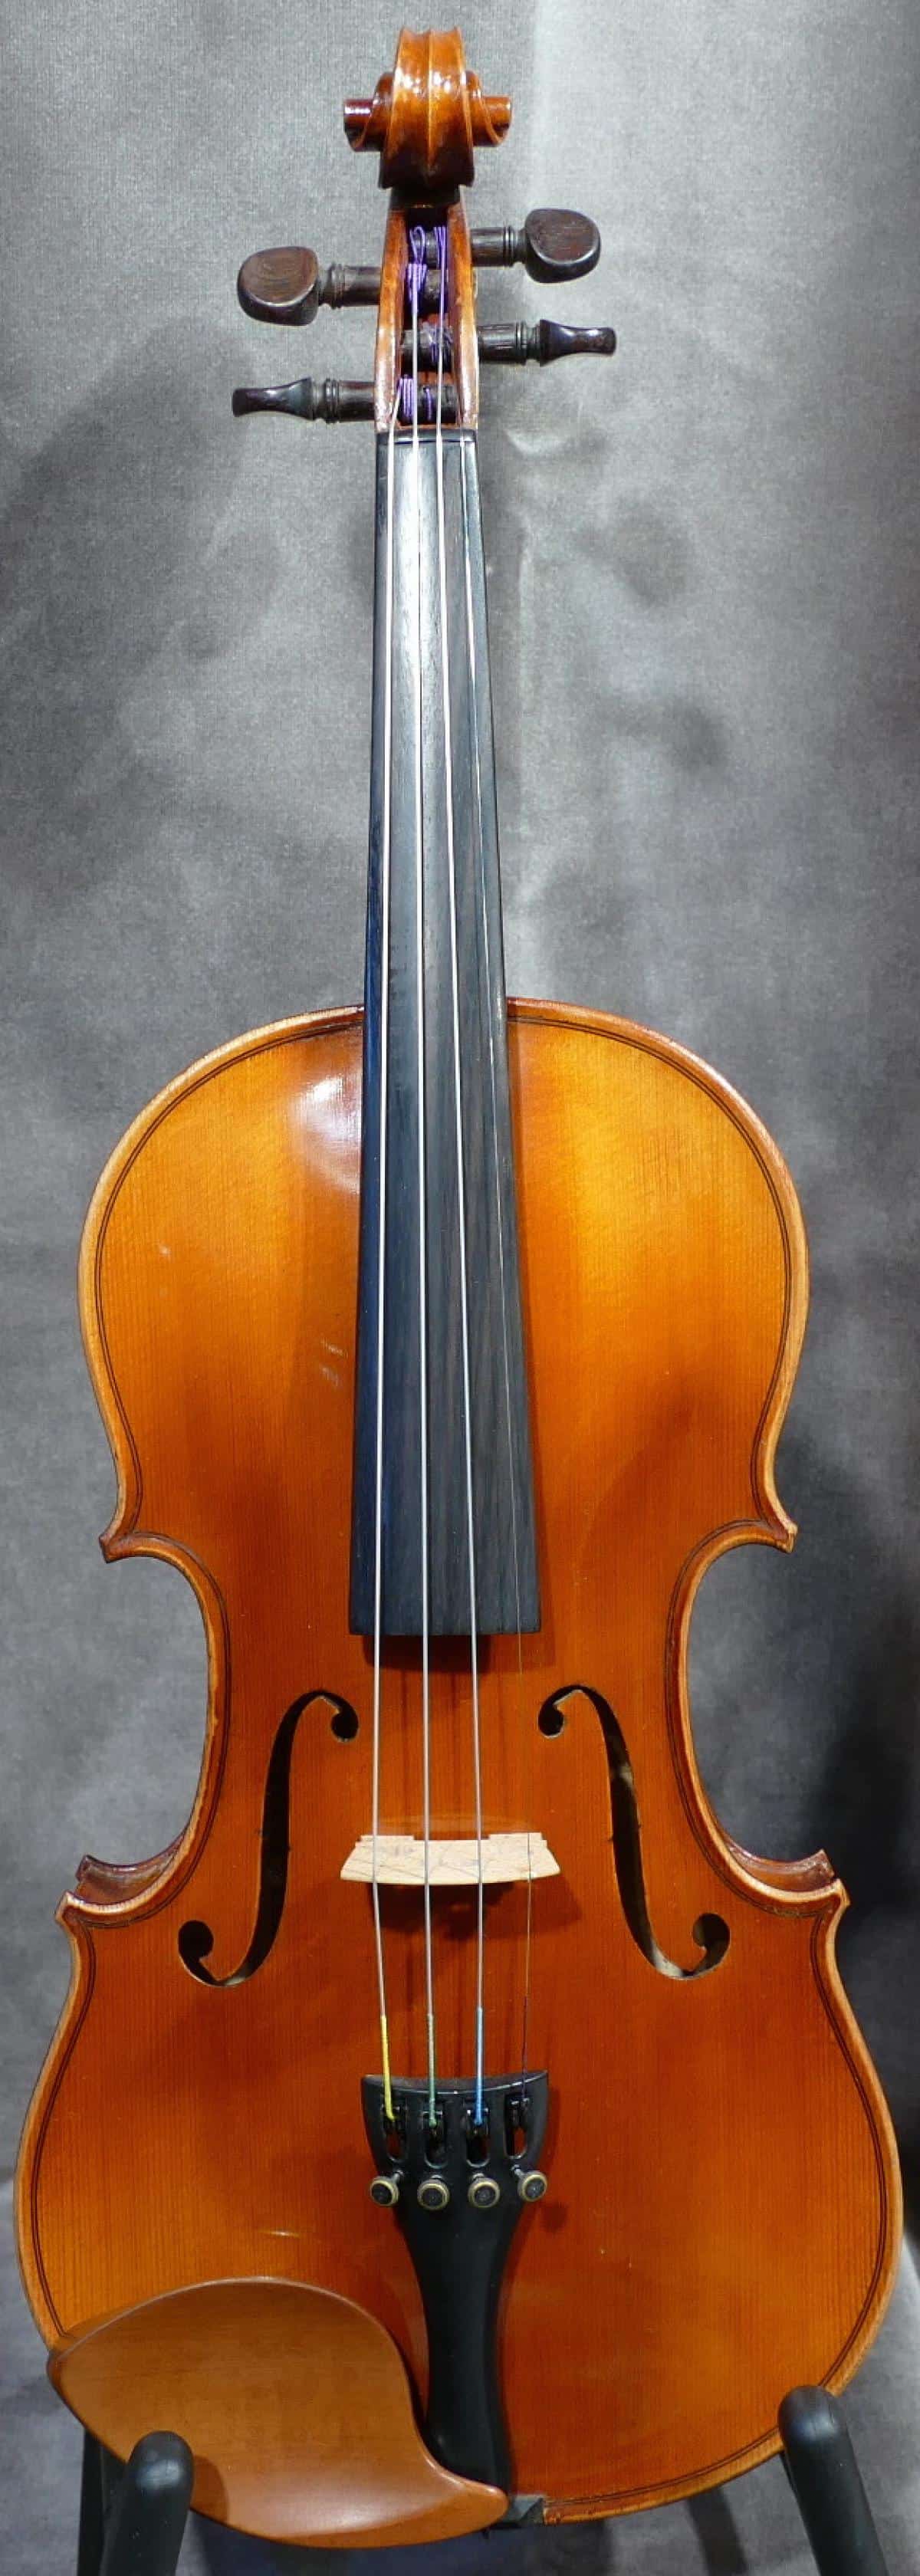 セール商品 フランス製 分数 3 4 バイオリン Laberte Magnie 1920年頃